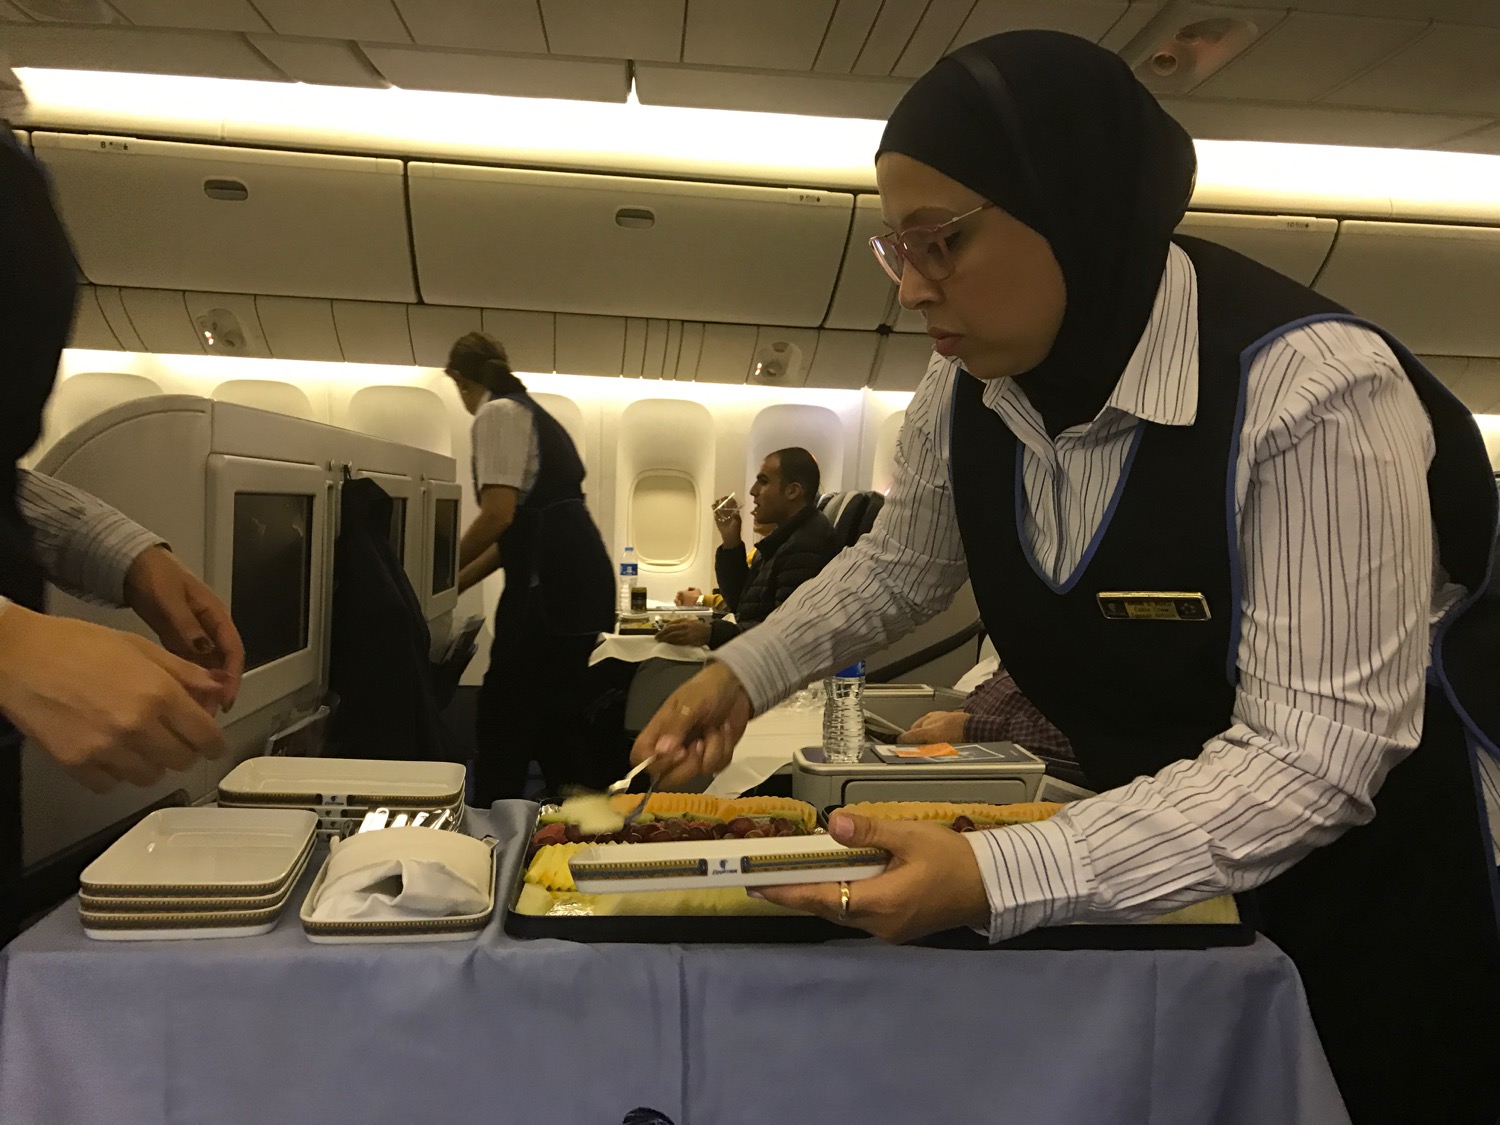 EgpytAir London to Cairo 777-300 Business Class - 67